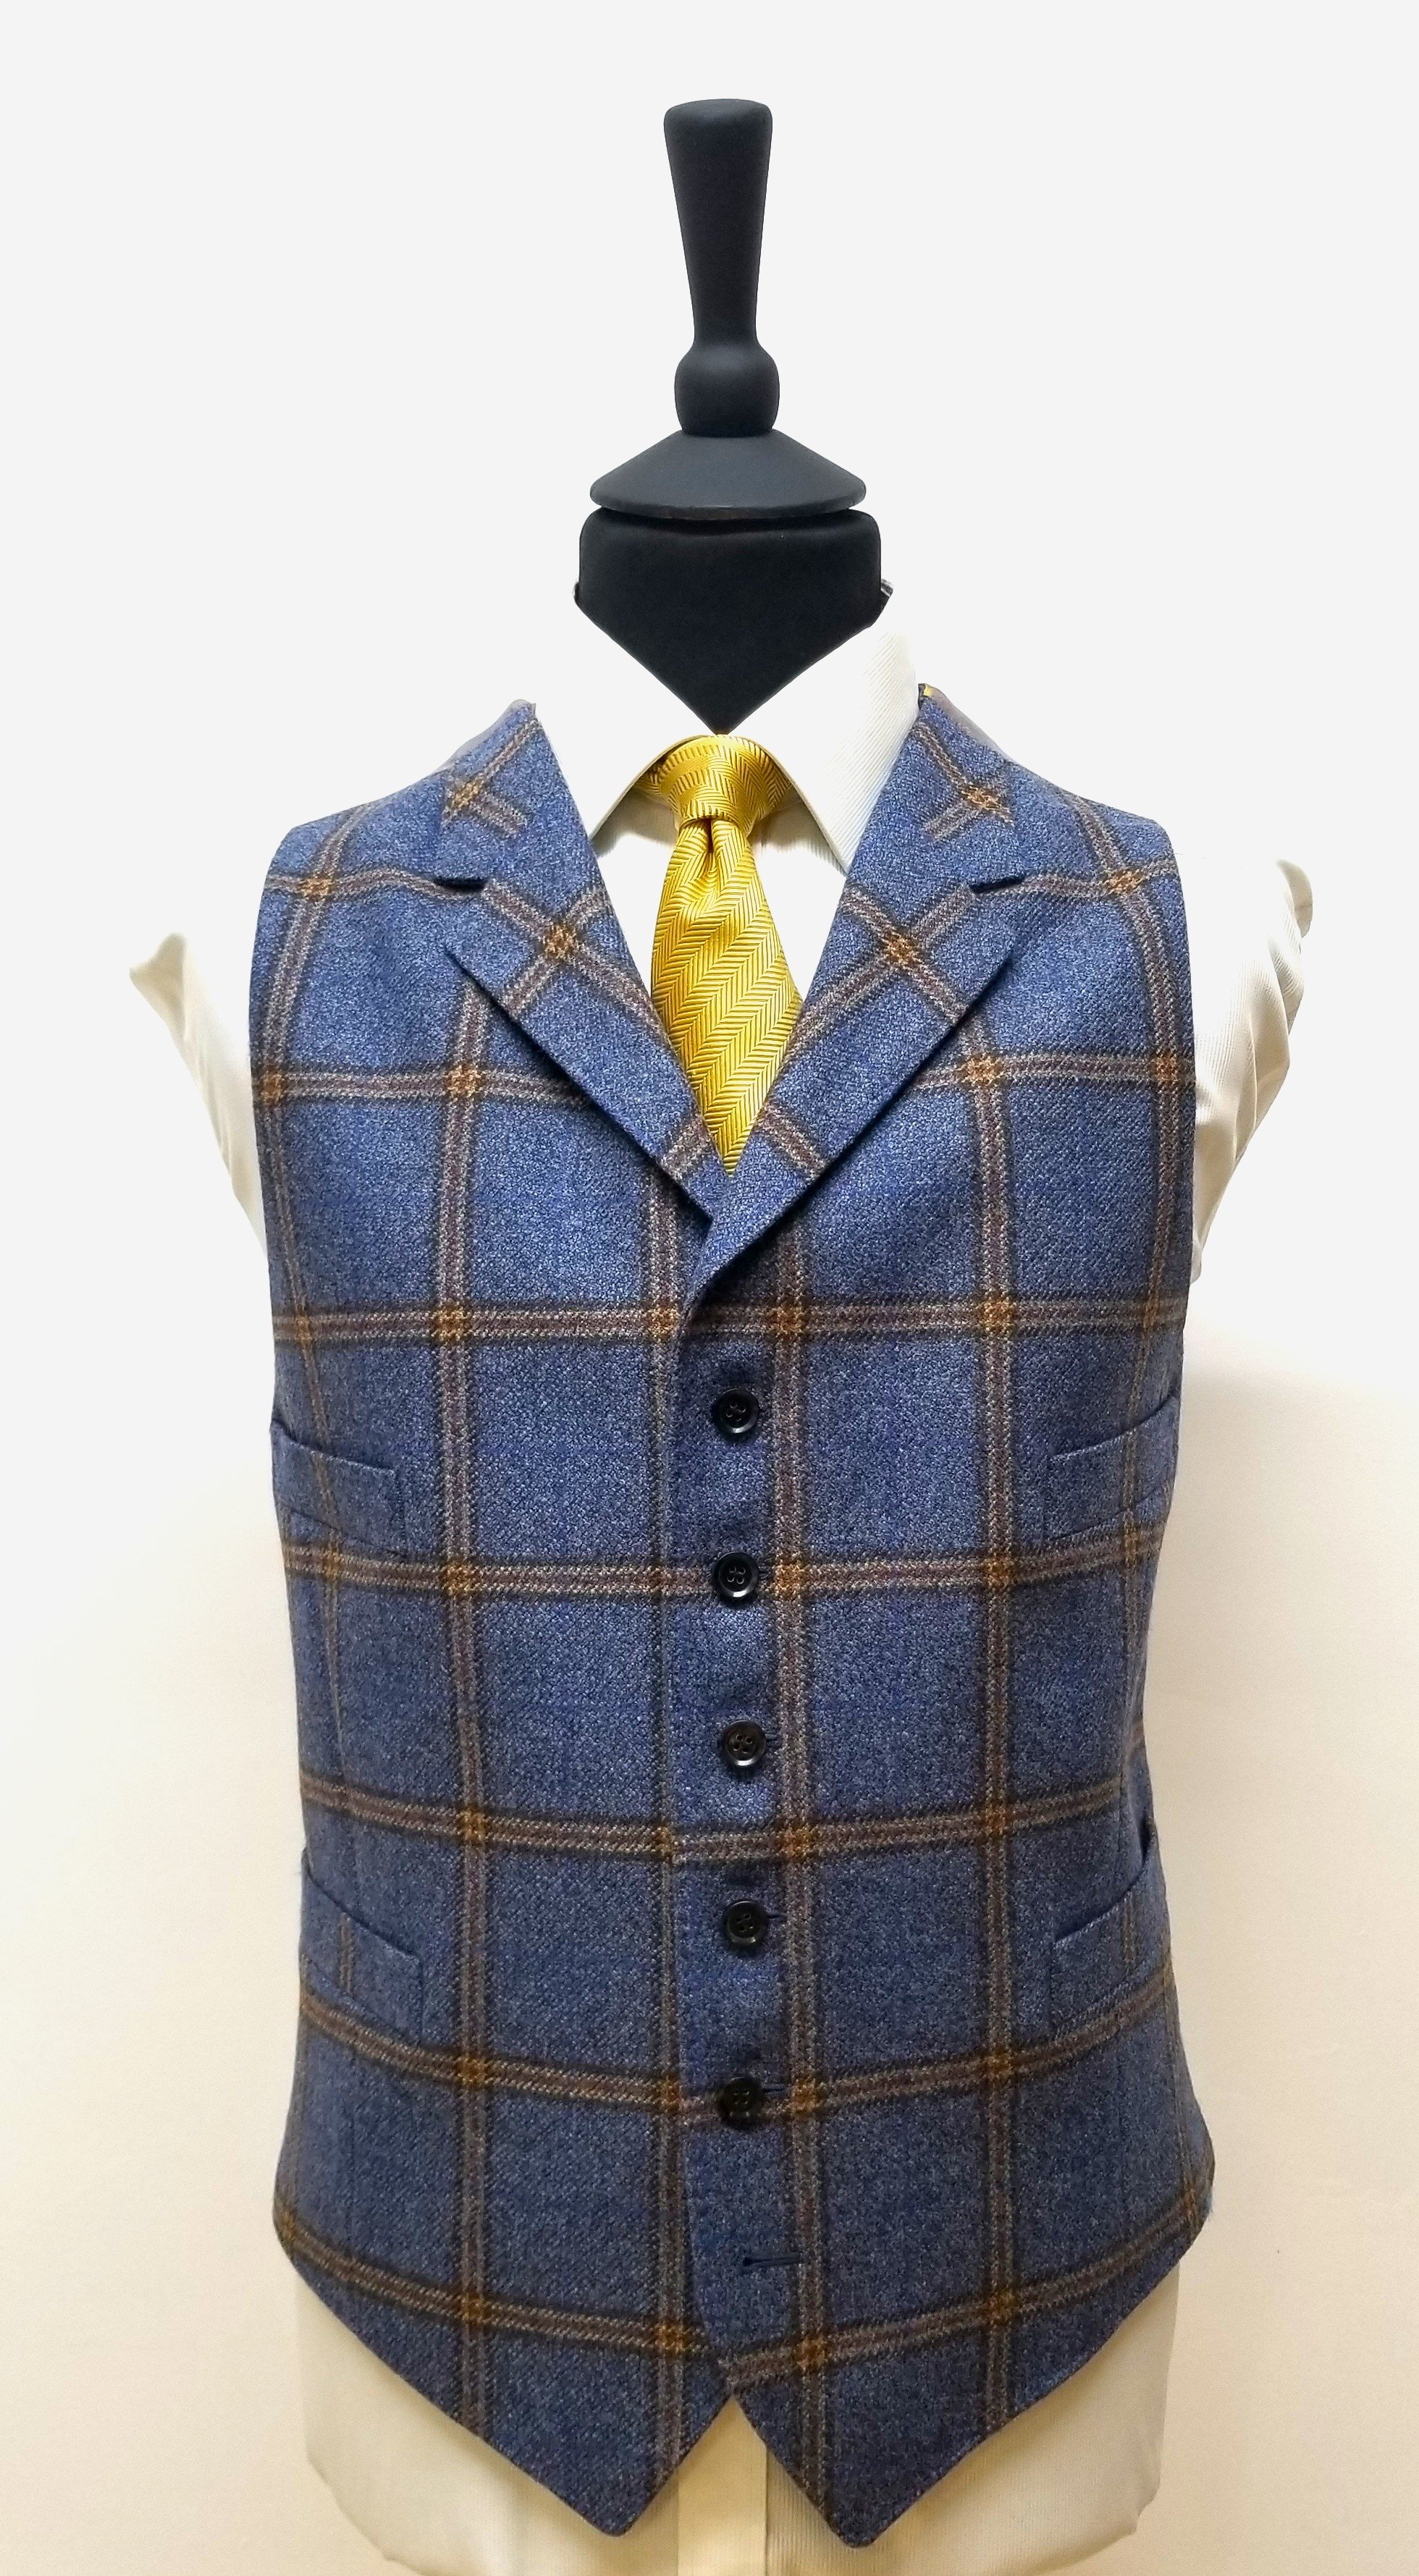 3 Piece suit in blue check tweed (2).jpg